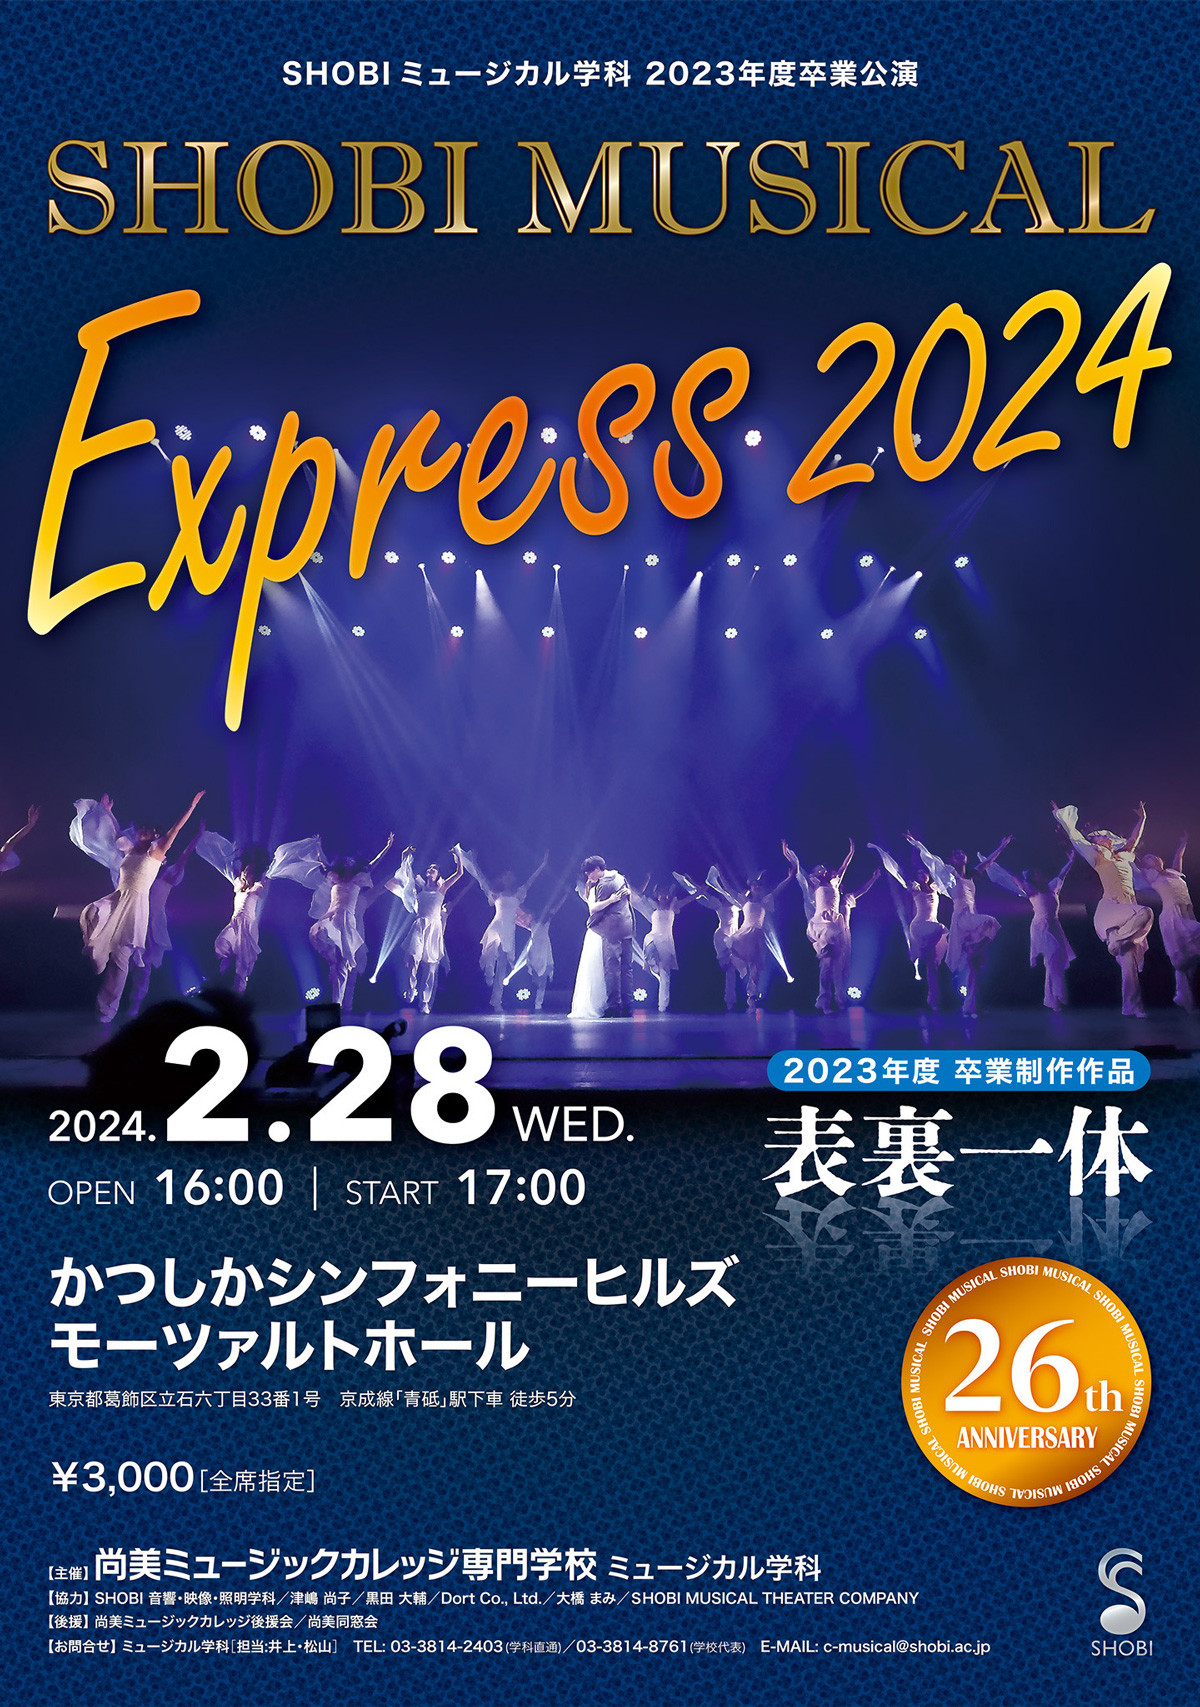 https://www.shobi.ac.jp/event/20240228_mu_musical-express-2024_01.jpg